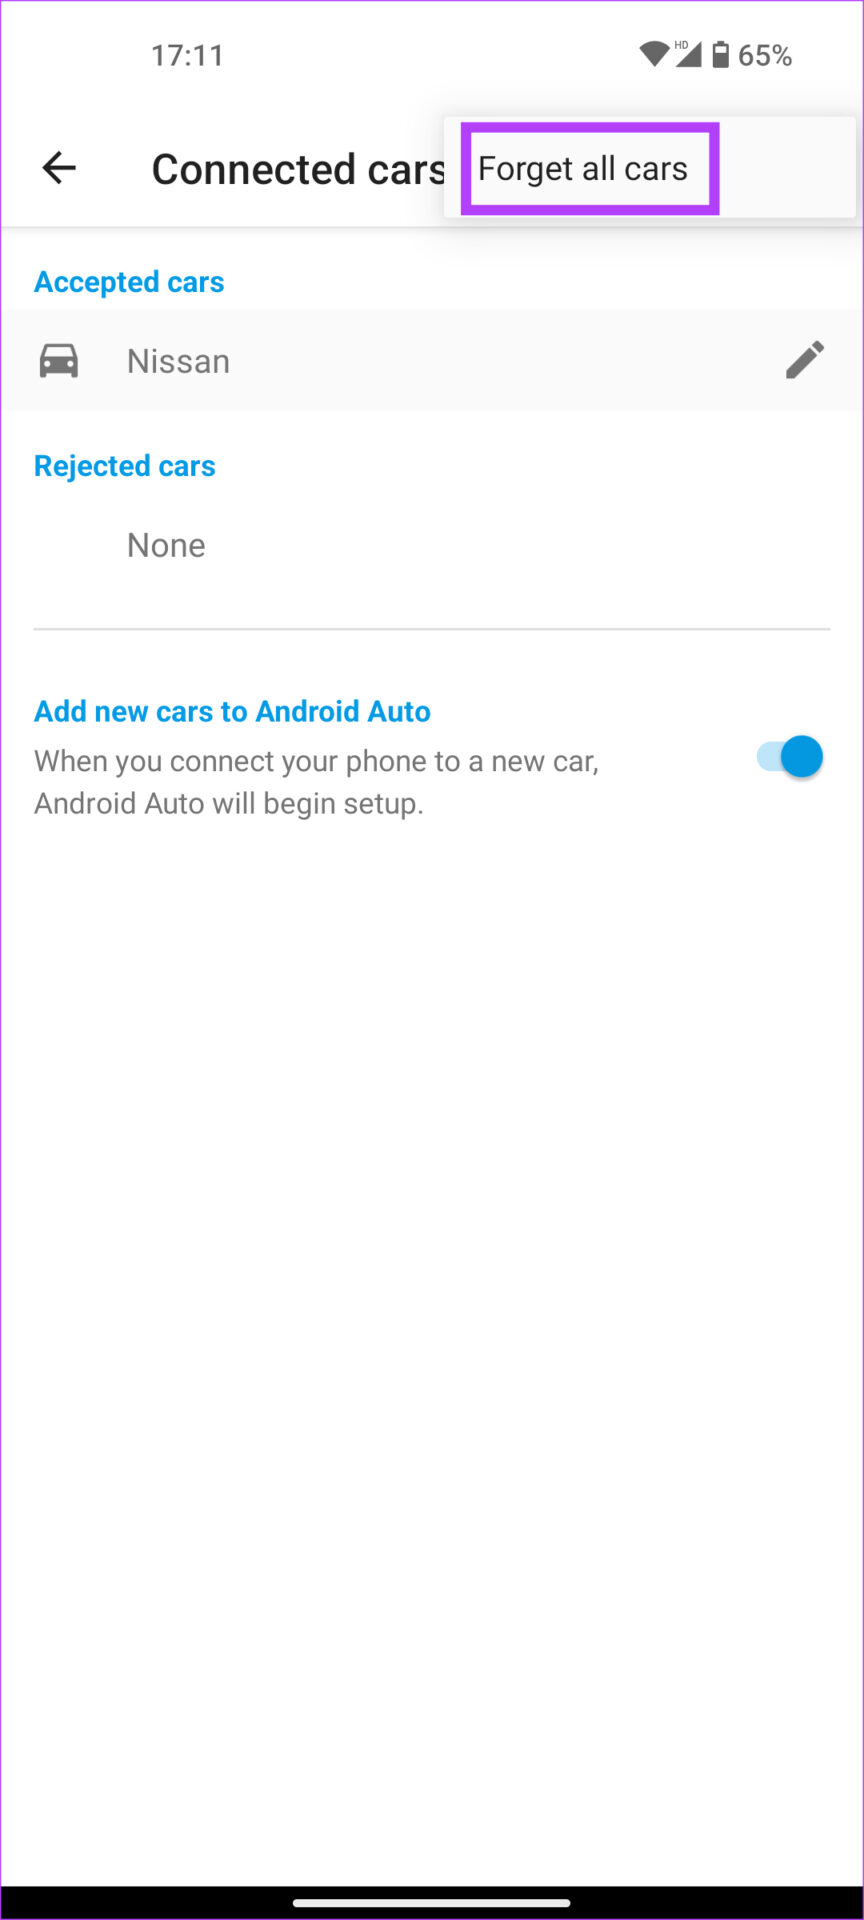 همه خودروهای دارای مشکل صفحه سیاه Android Auto را فراموش کنید